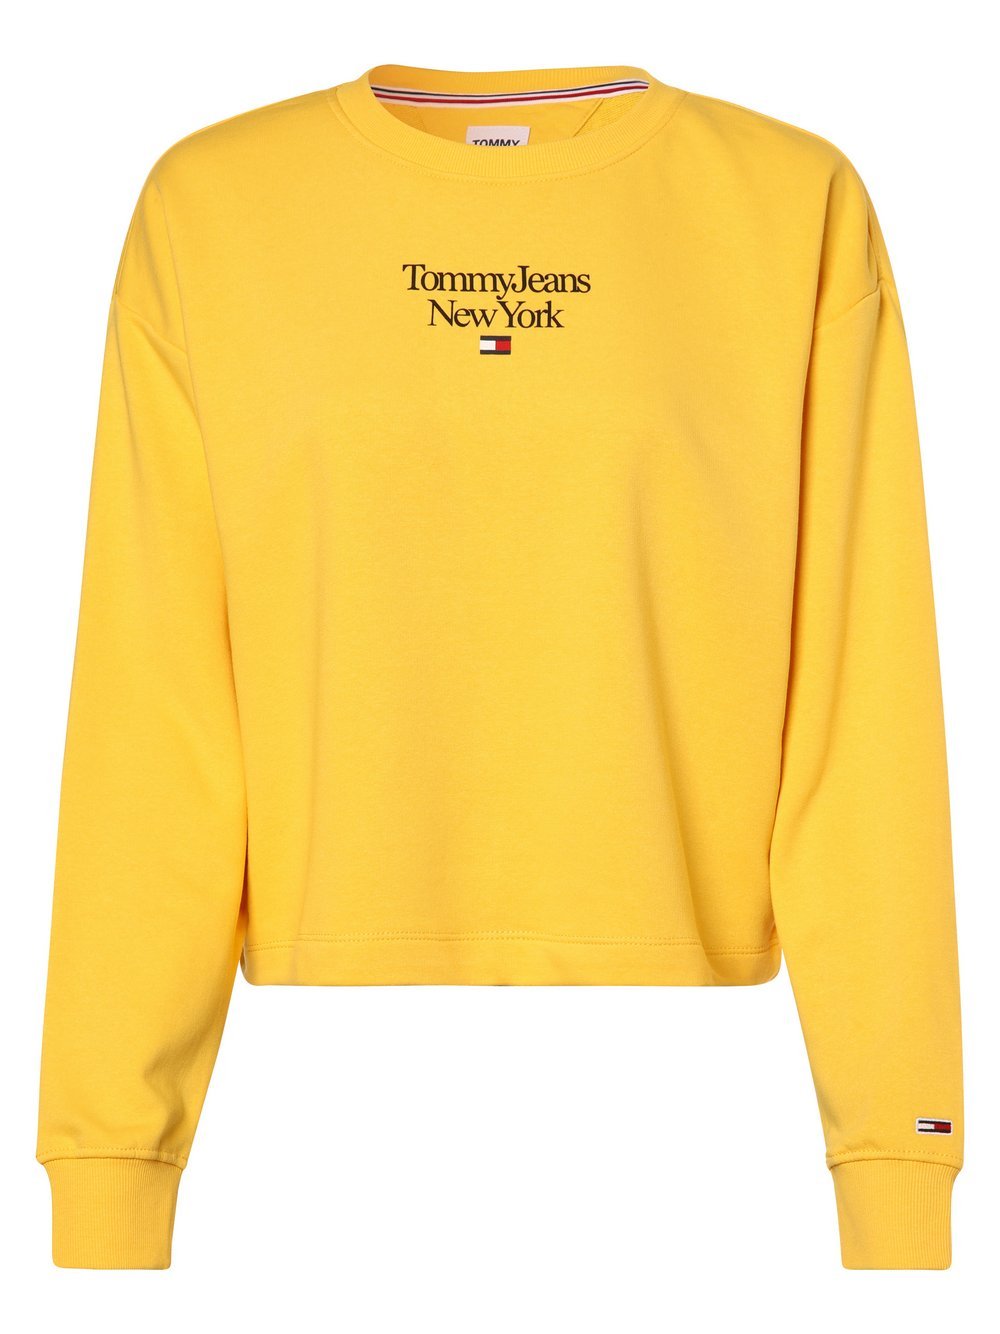 Tommy Jeans - Damska bluza nierozpinana, żółty